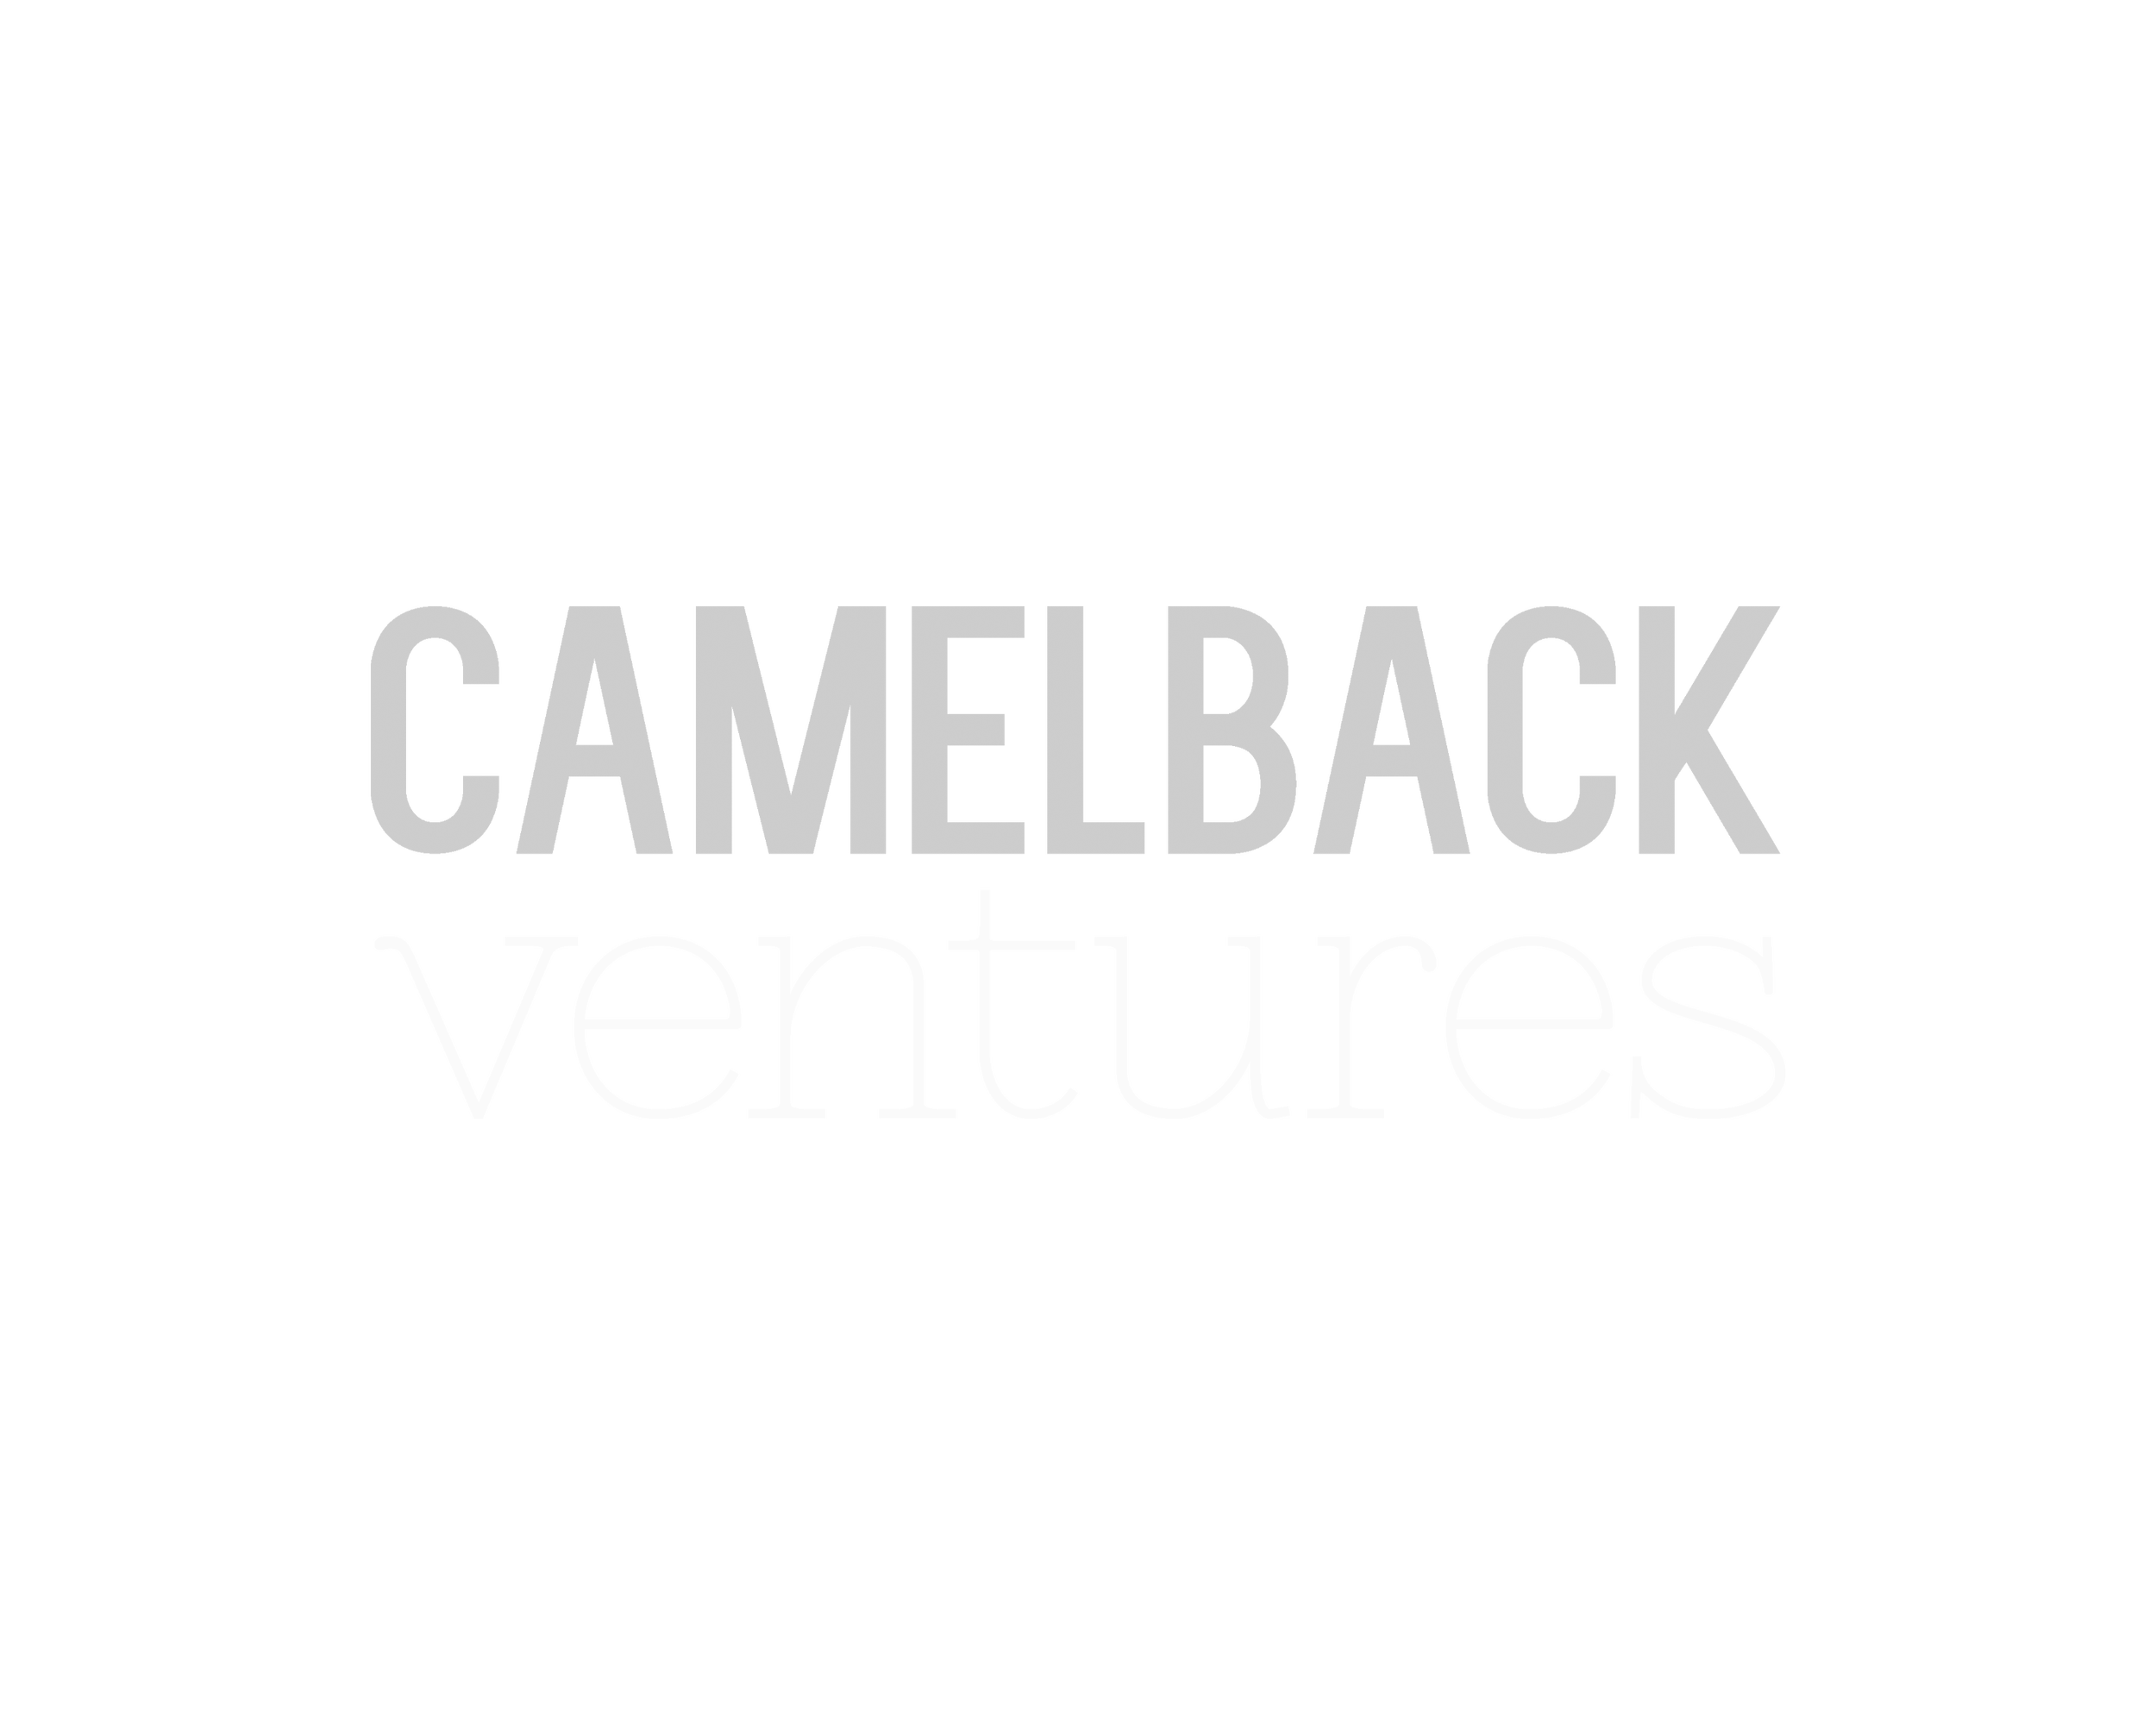 Camelback-Ventures-logo.png